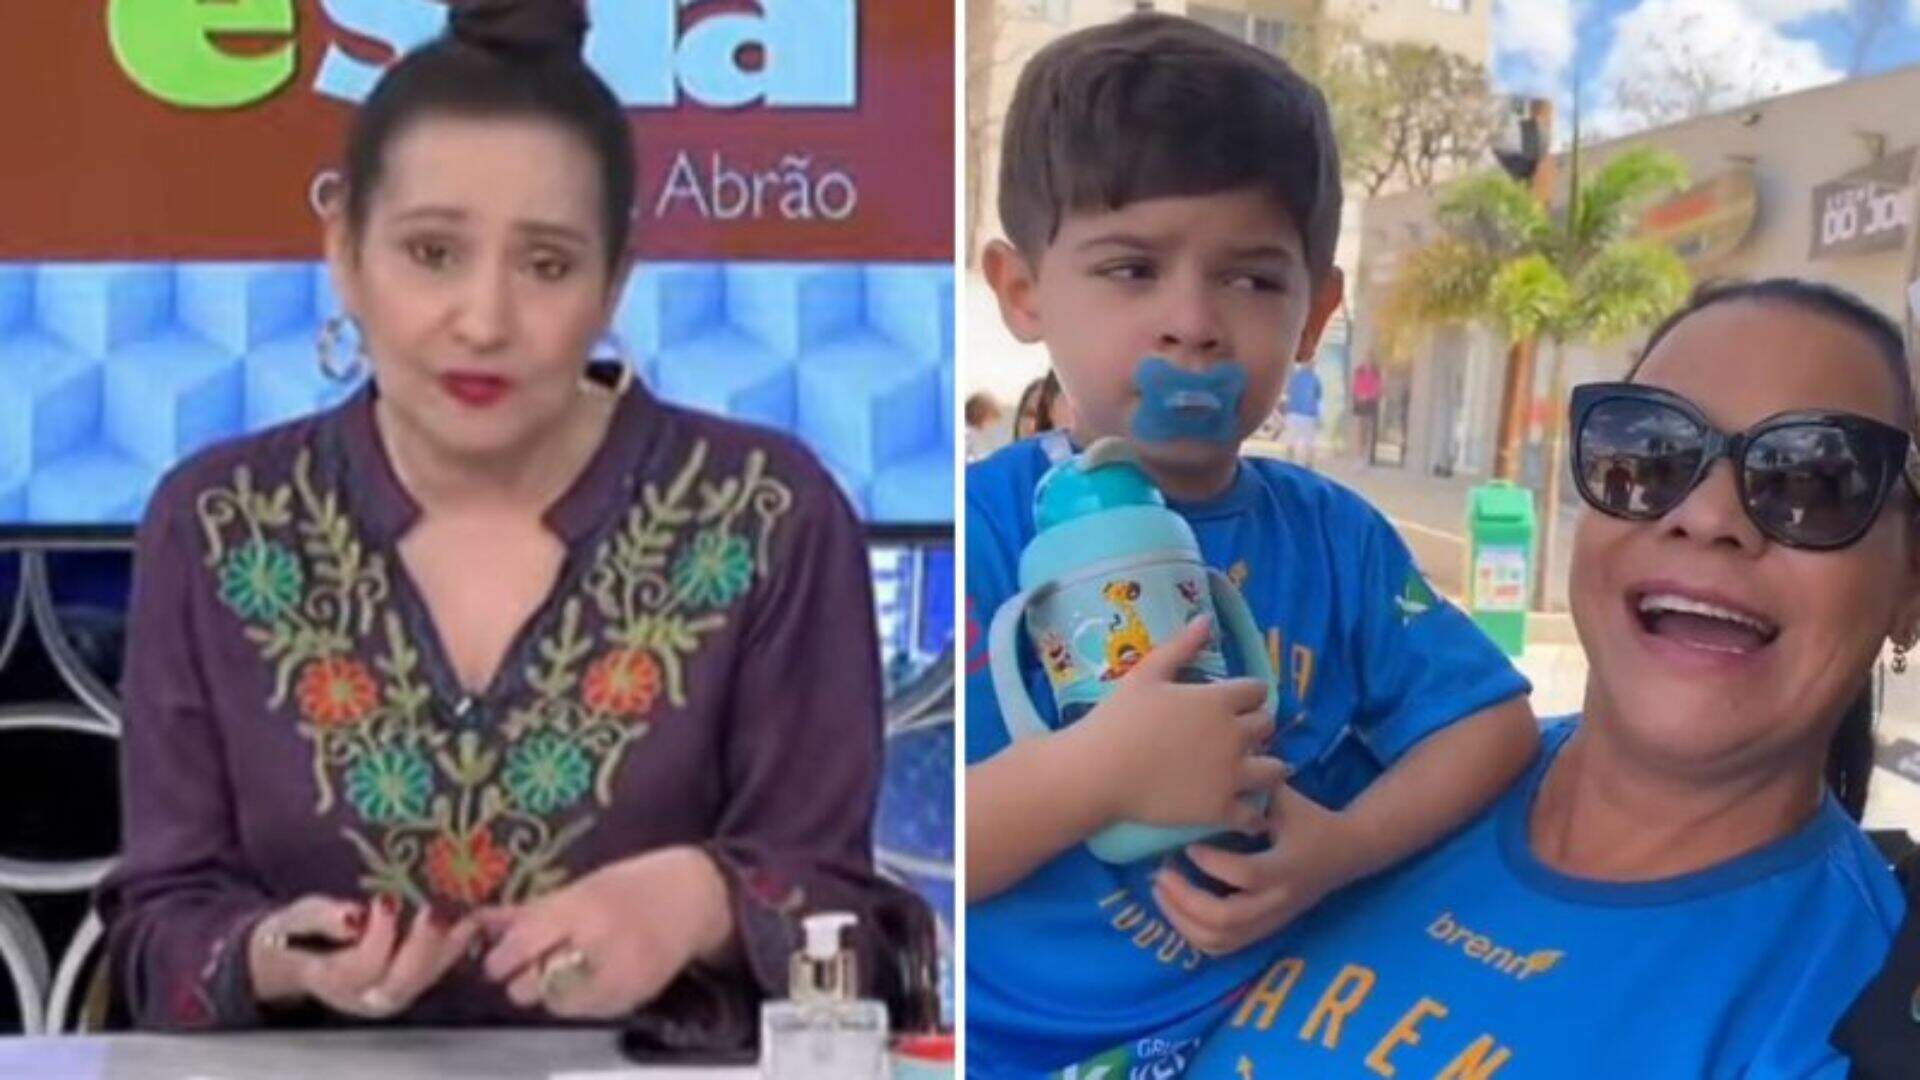 Sonia Abrão crítica mãe de Marília Mendonça após atitude constrangedora envolvendo filho da cantora - Metropolitana FM